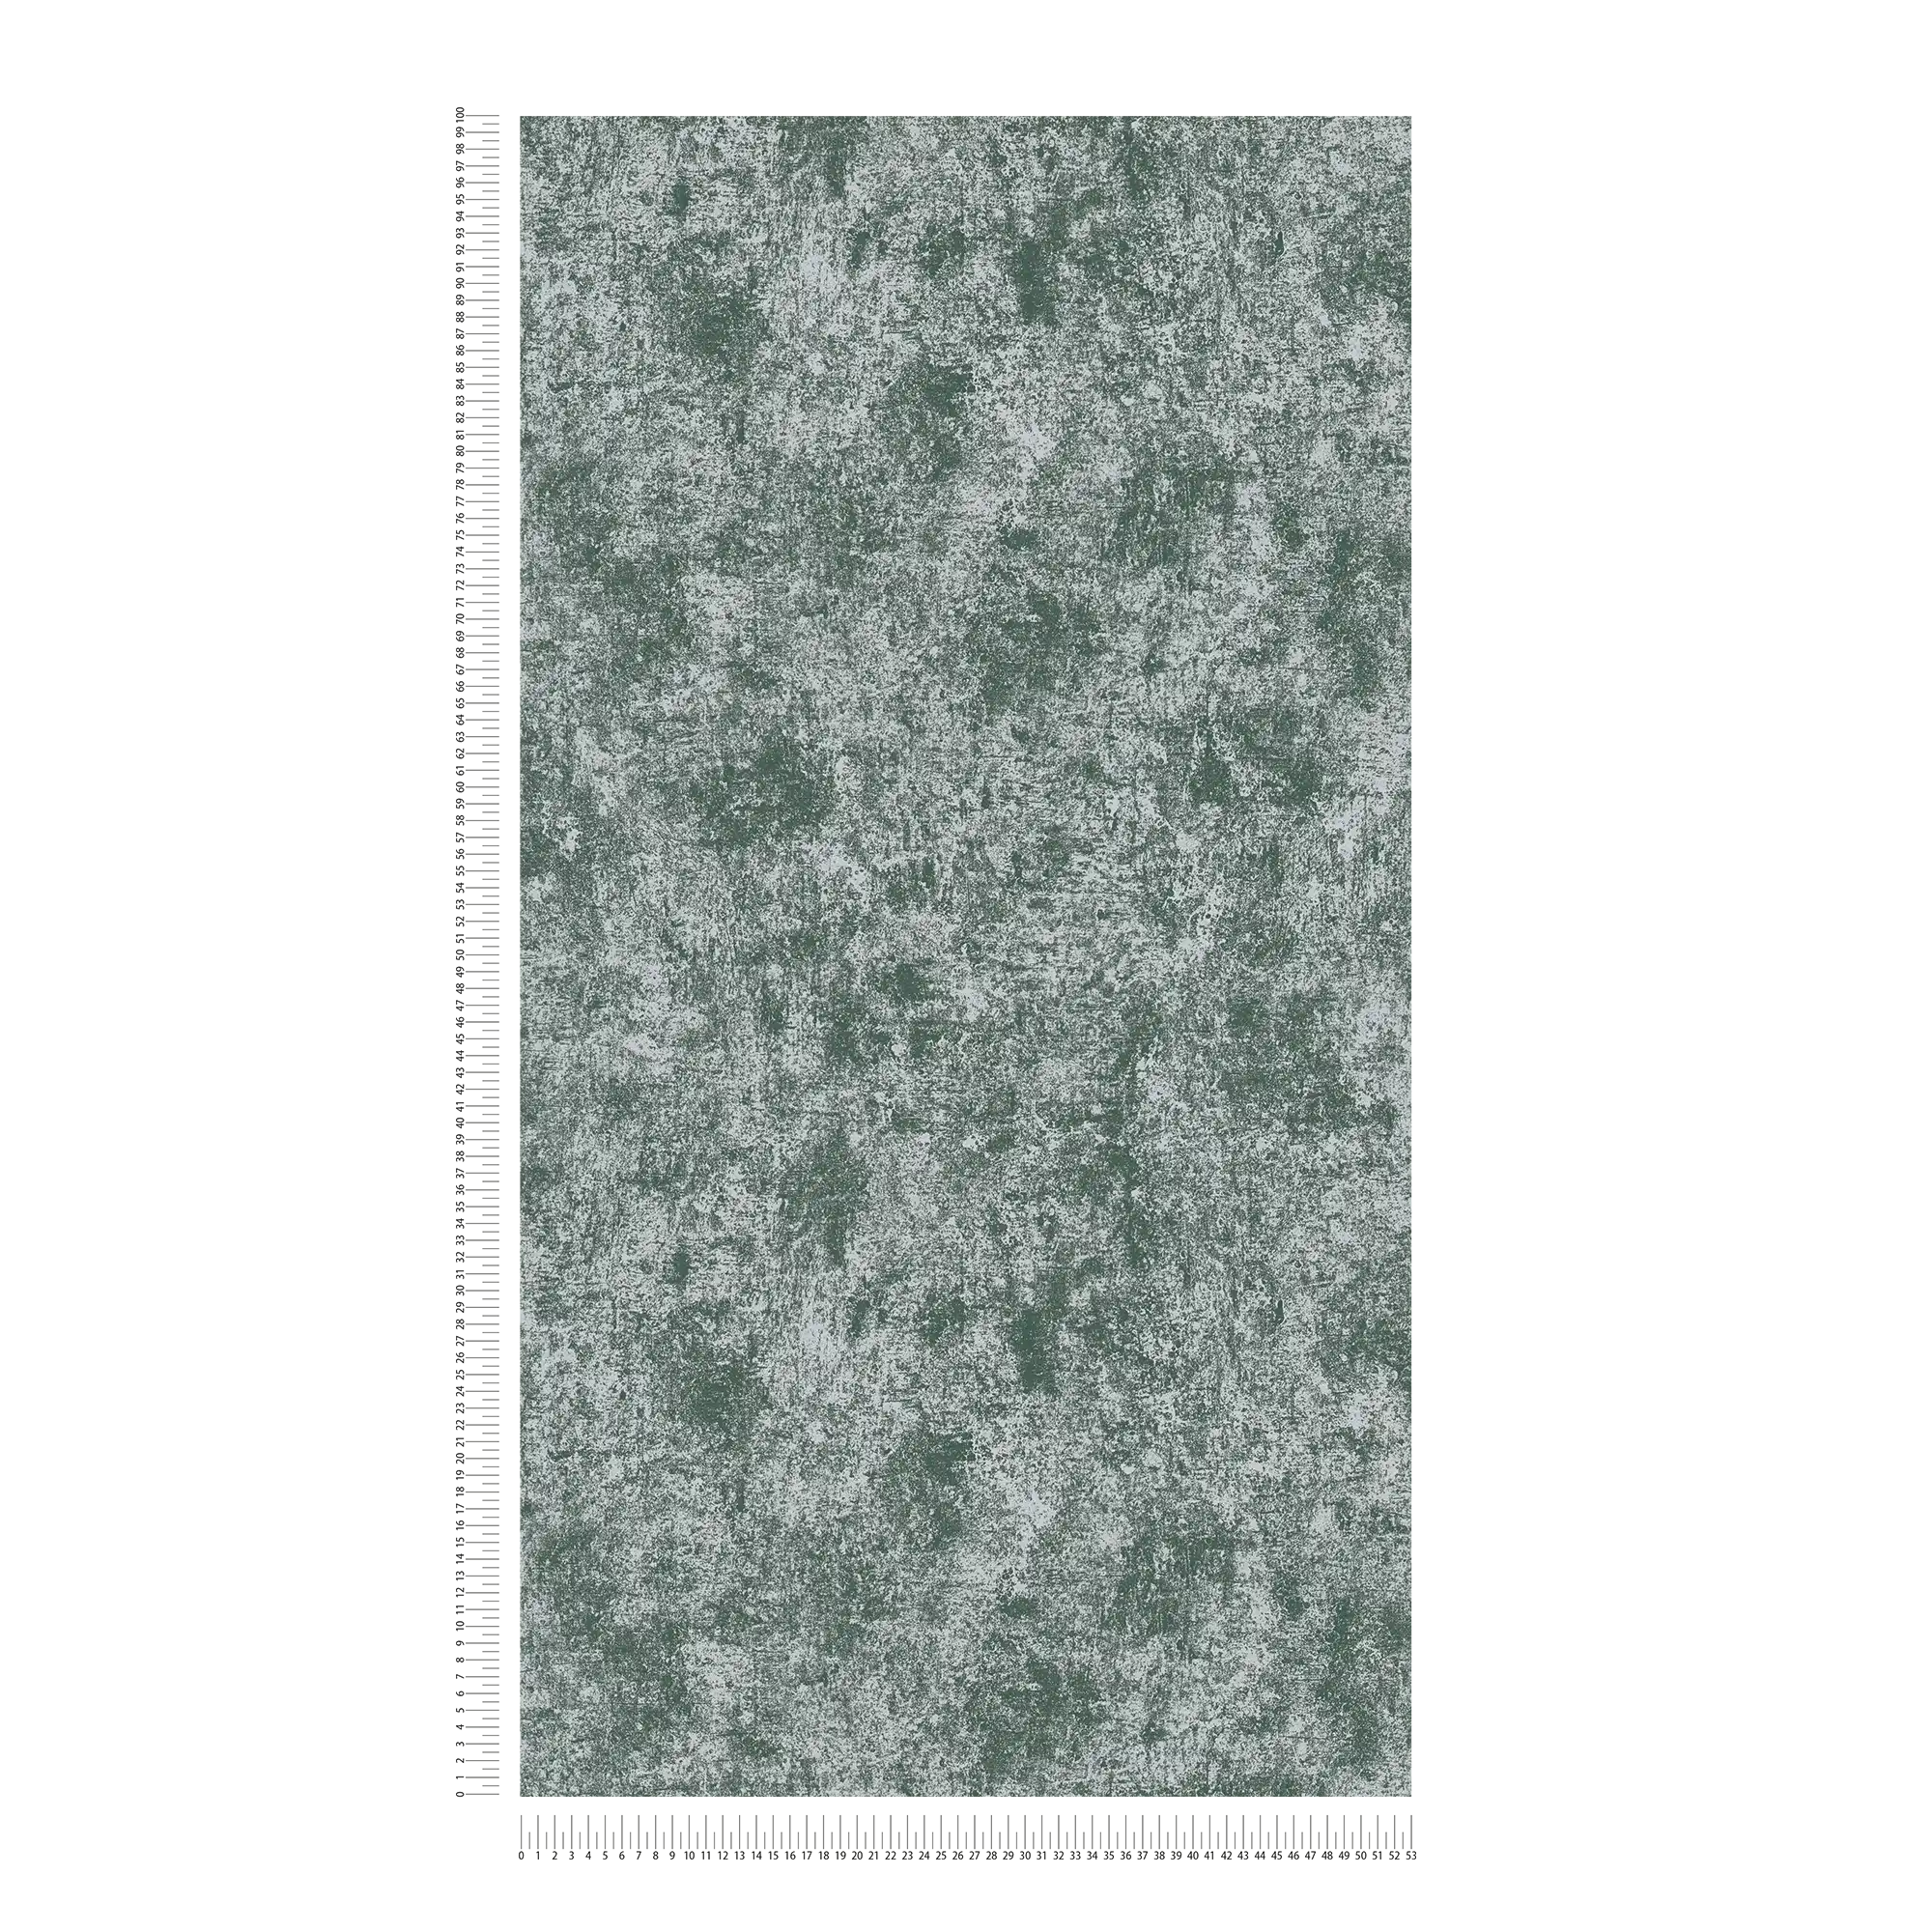             Tapete in Metalloptik mit Glanzeffekt glatt – Grün, Silber
        